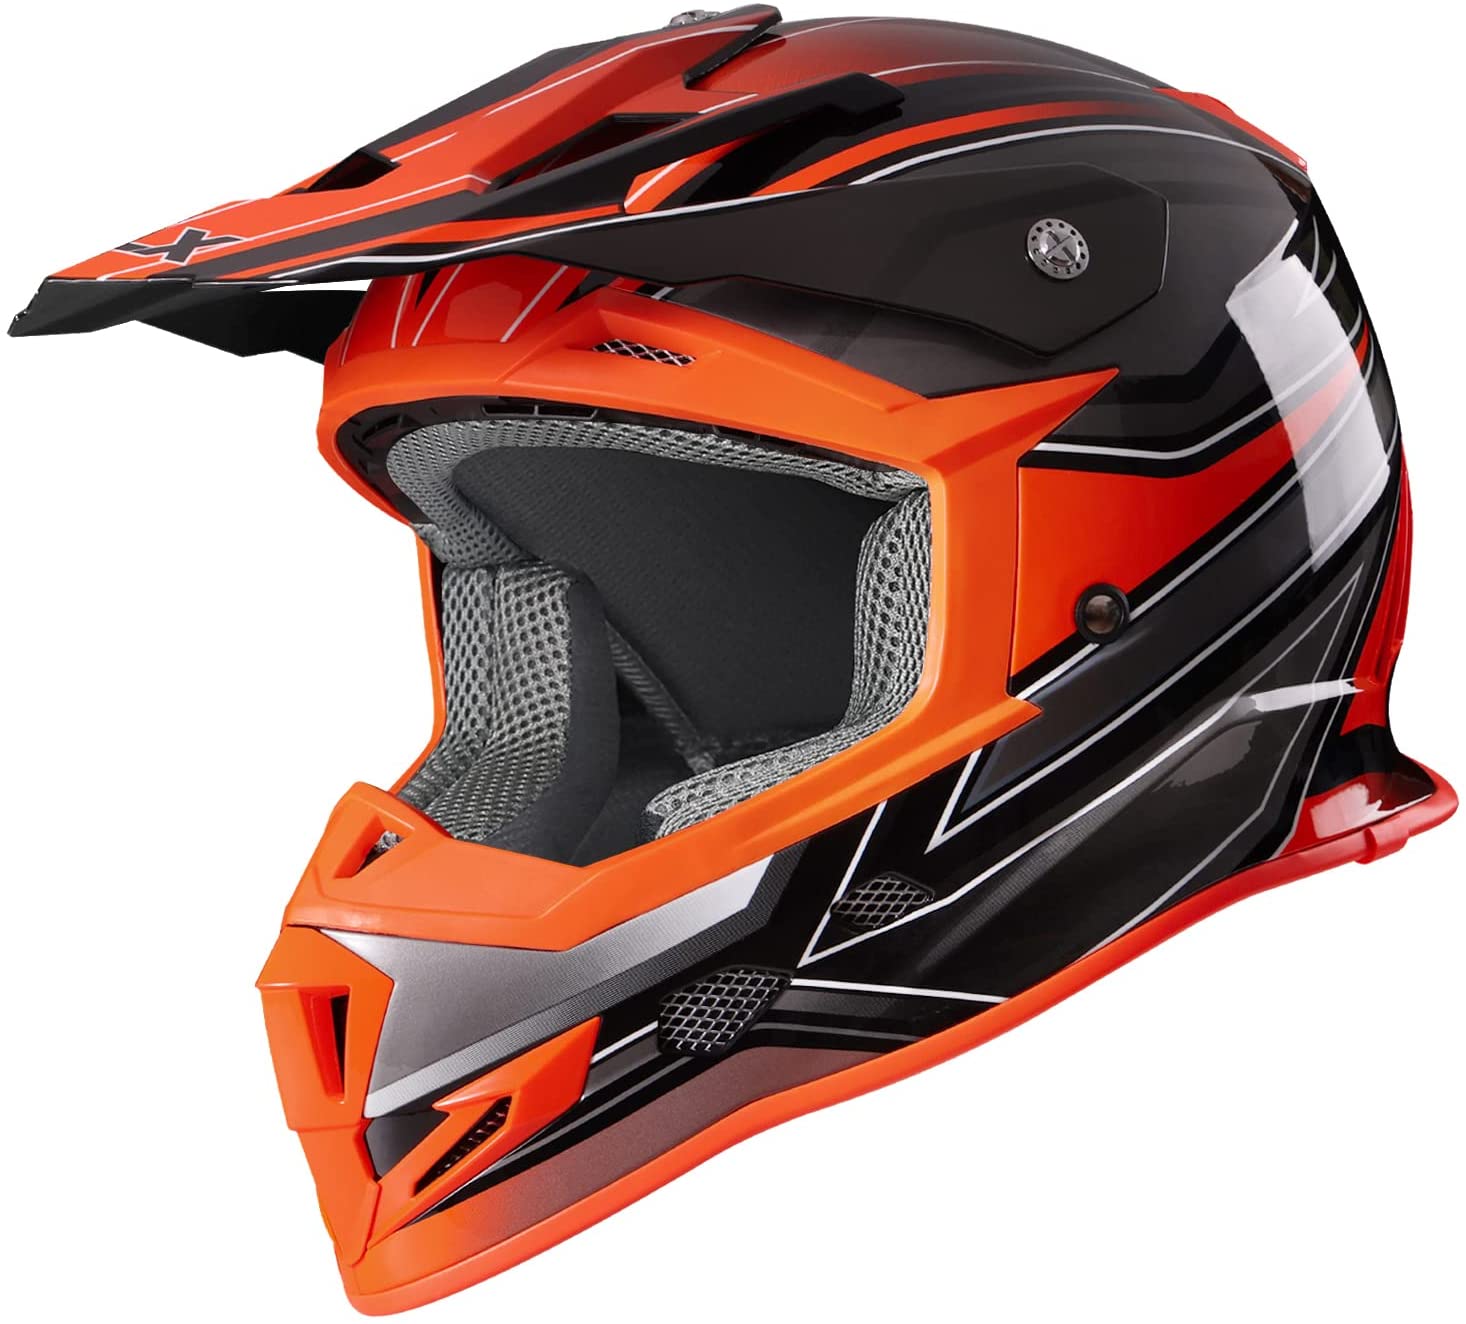 GLX Unisex-Adult GX23 Dirt Bike Off-Road Motocross ATV Motorcycle Helmet for Men Women, DOT Approved